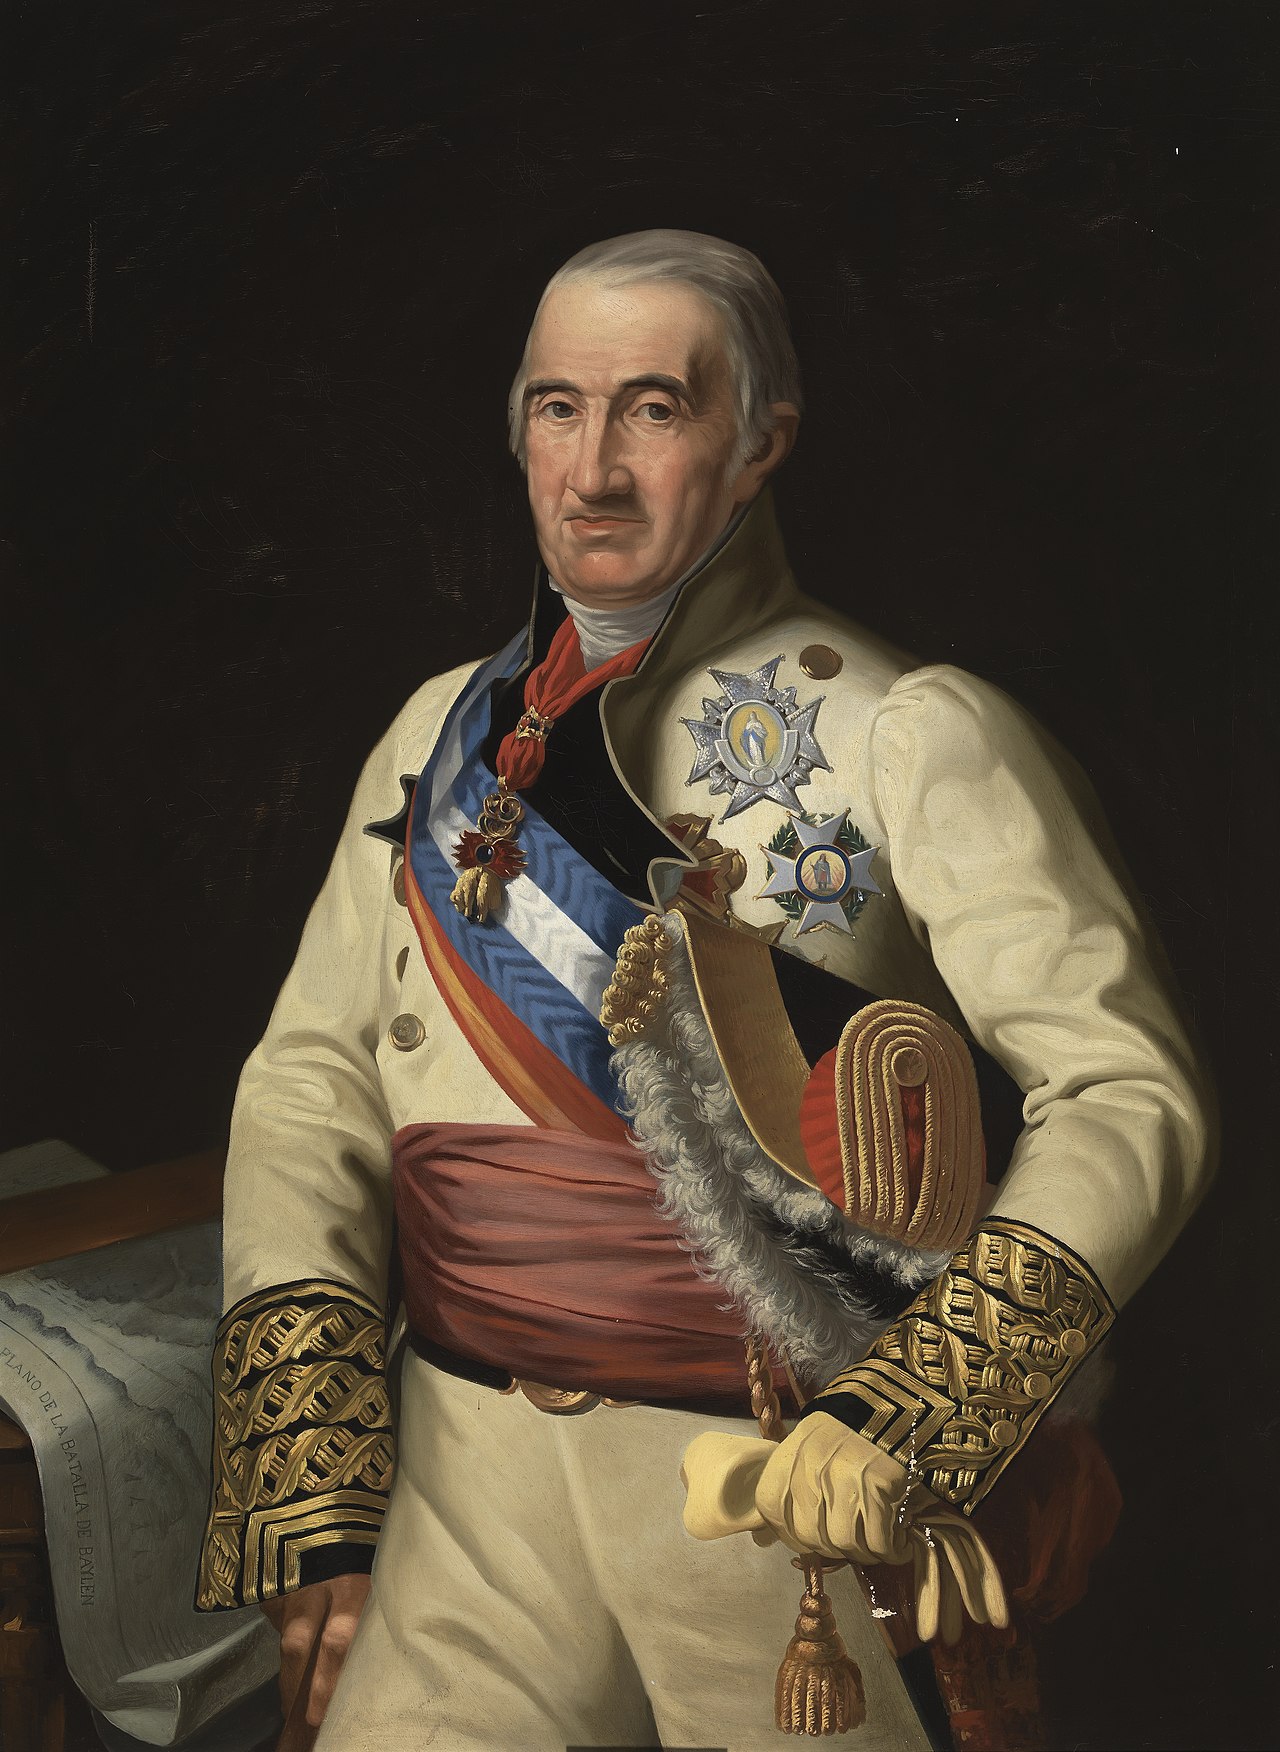 Retrato del general Francisco Javier Castaños, realizado por el pintor y grabador español José María Galván y Candela en 1850. 